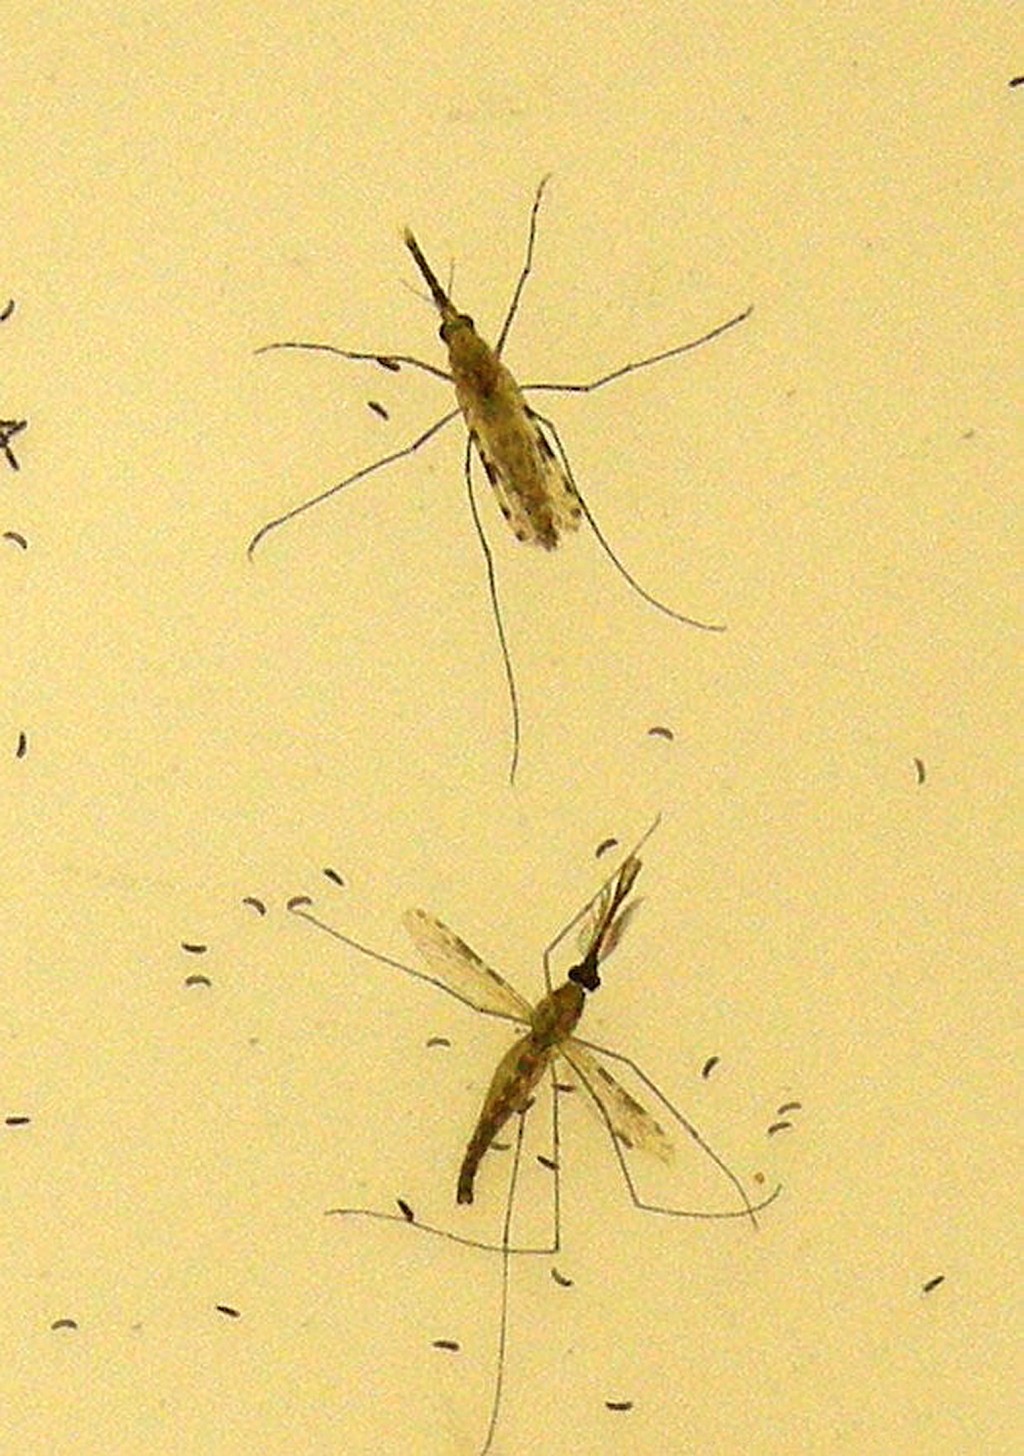 蚊子是疟疾的主要传播媒介。路透社